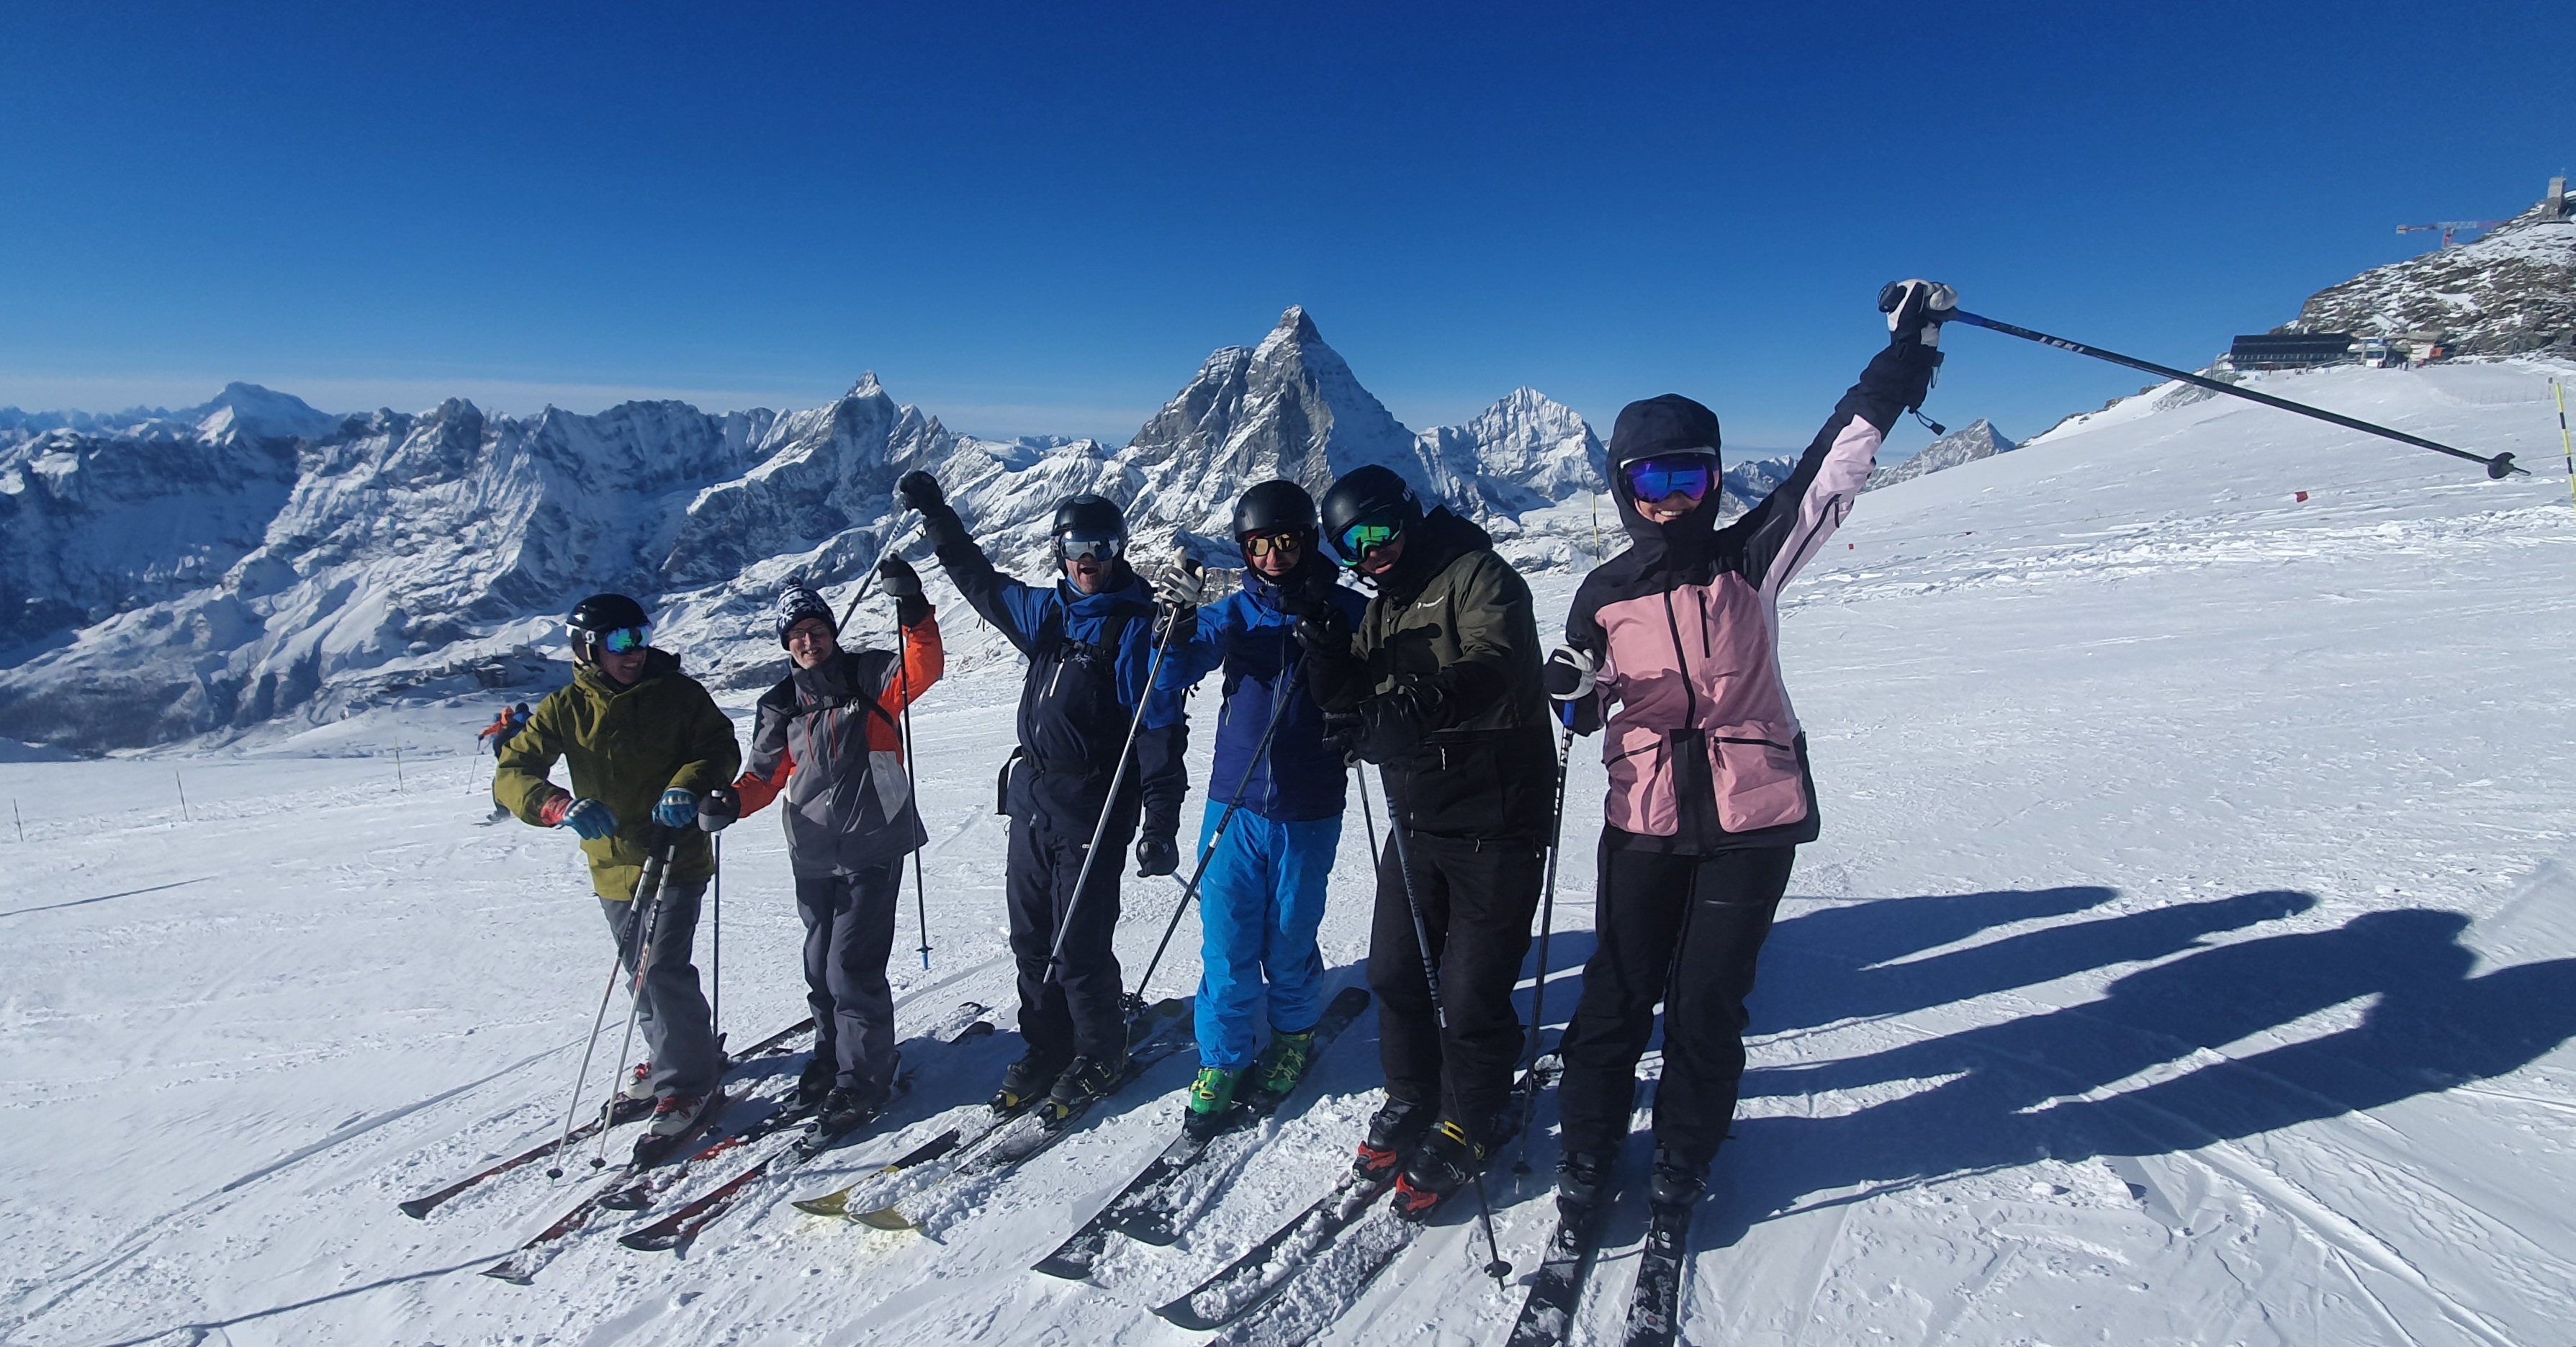 Early season skiing in Zermatt